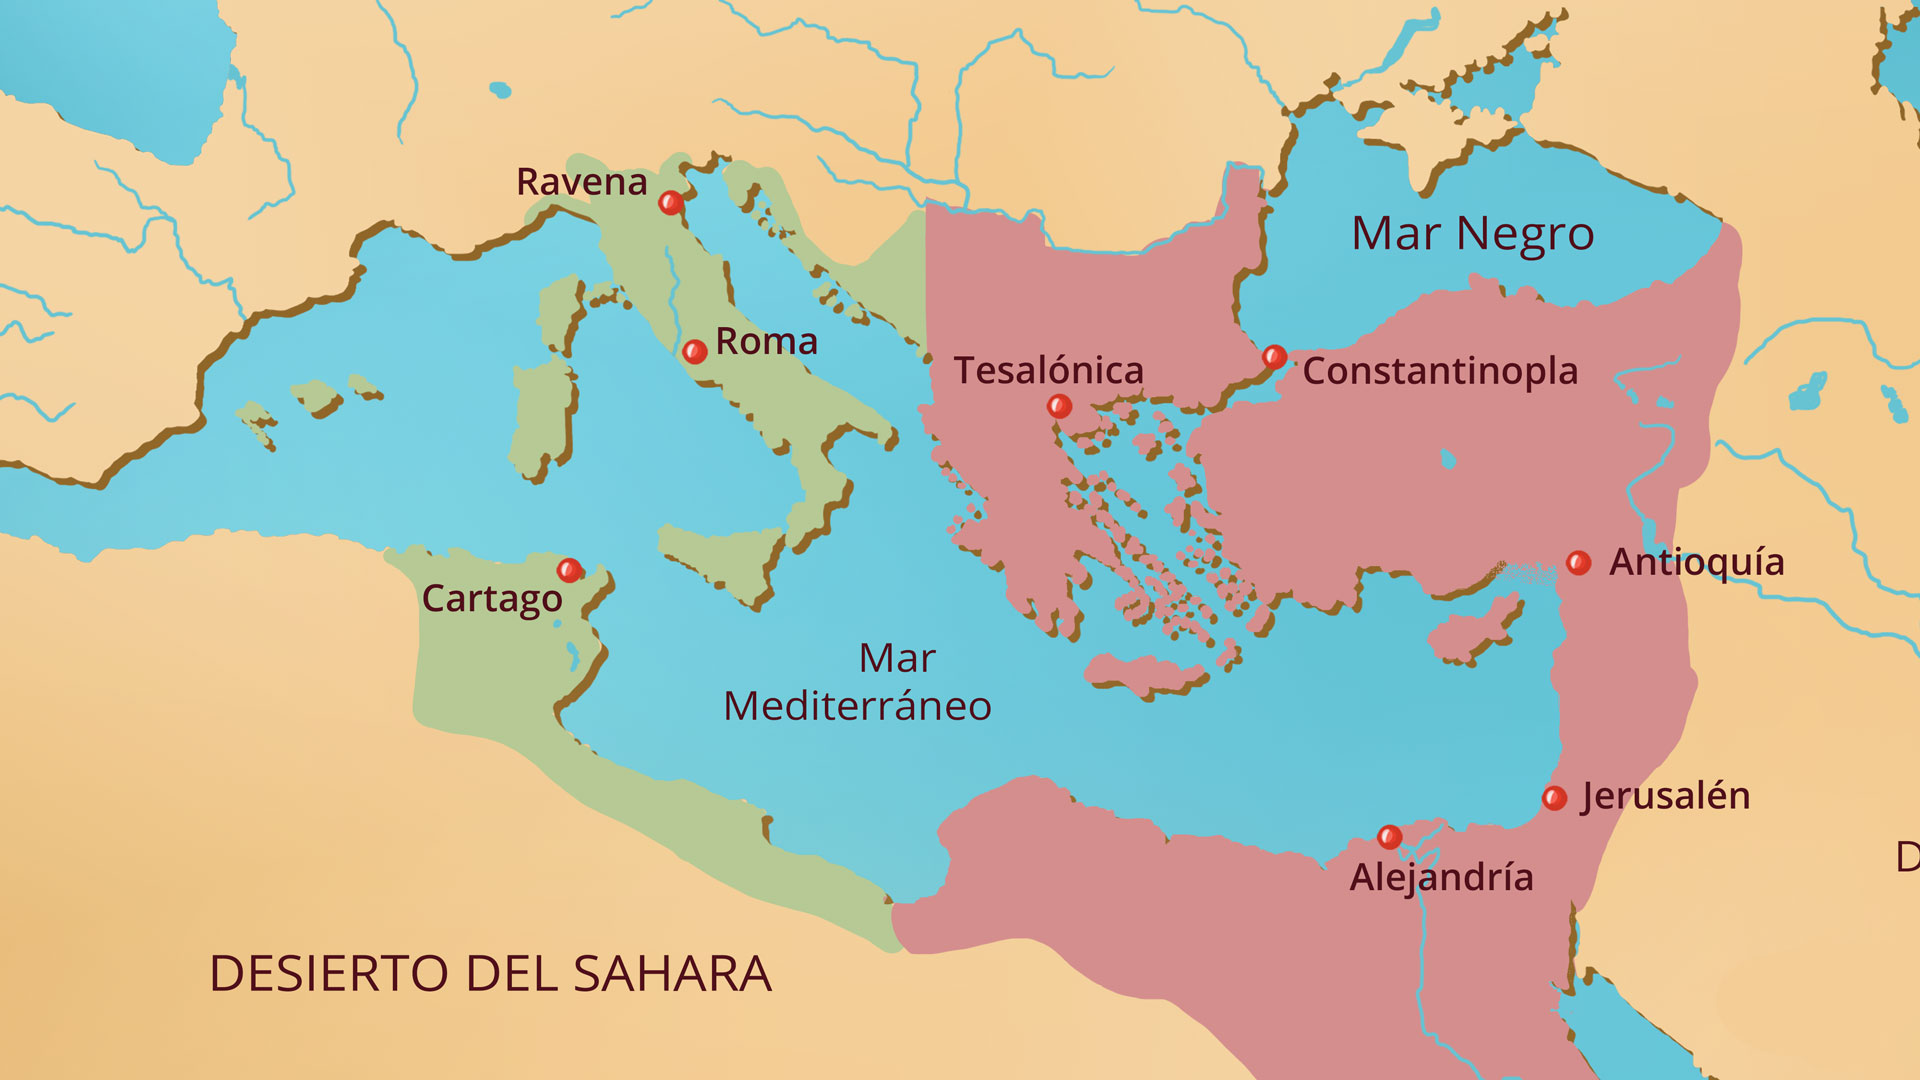 Imperio Romano de oriente en el año 550